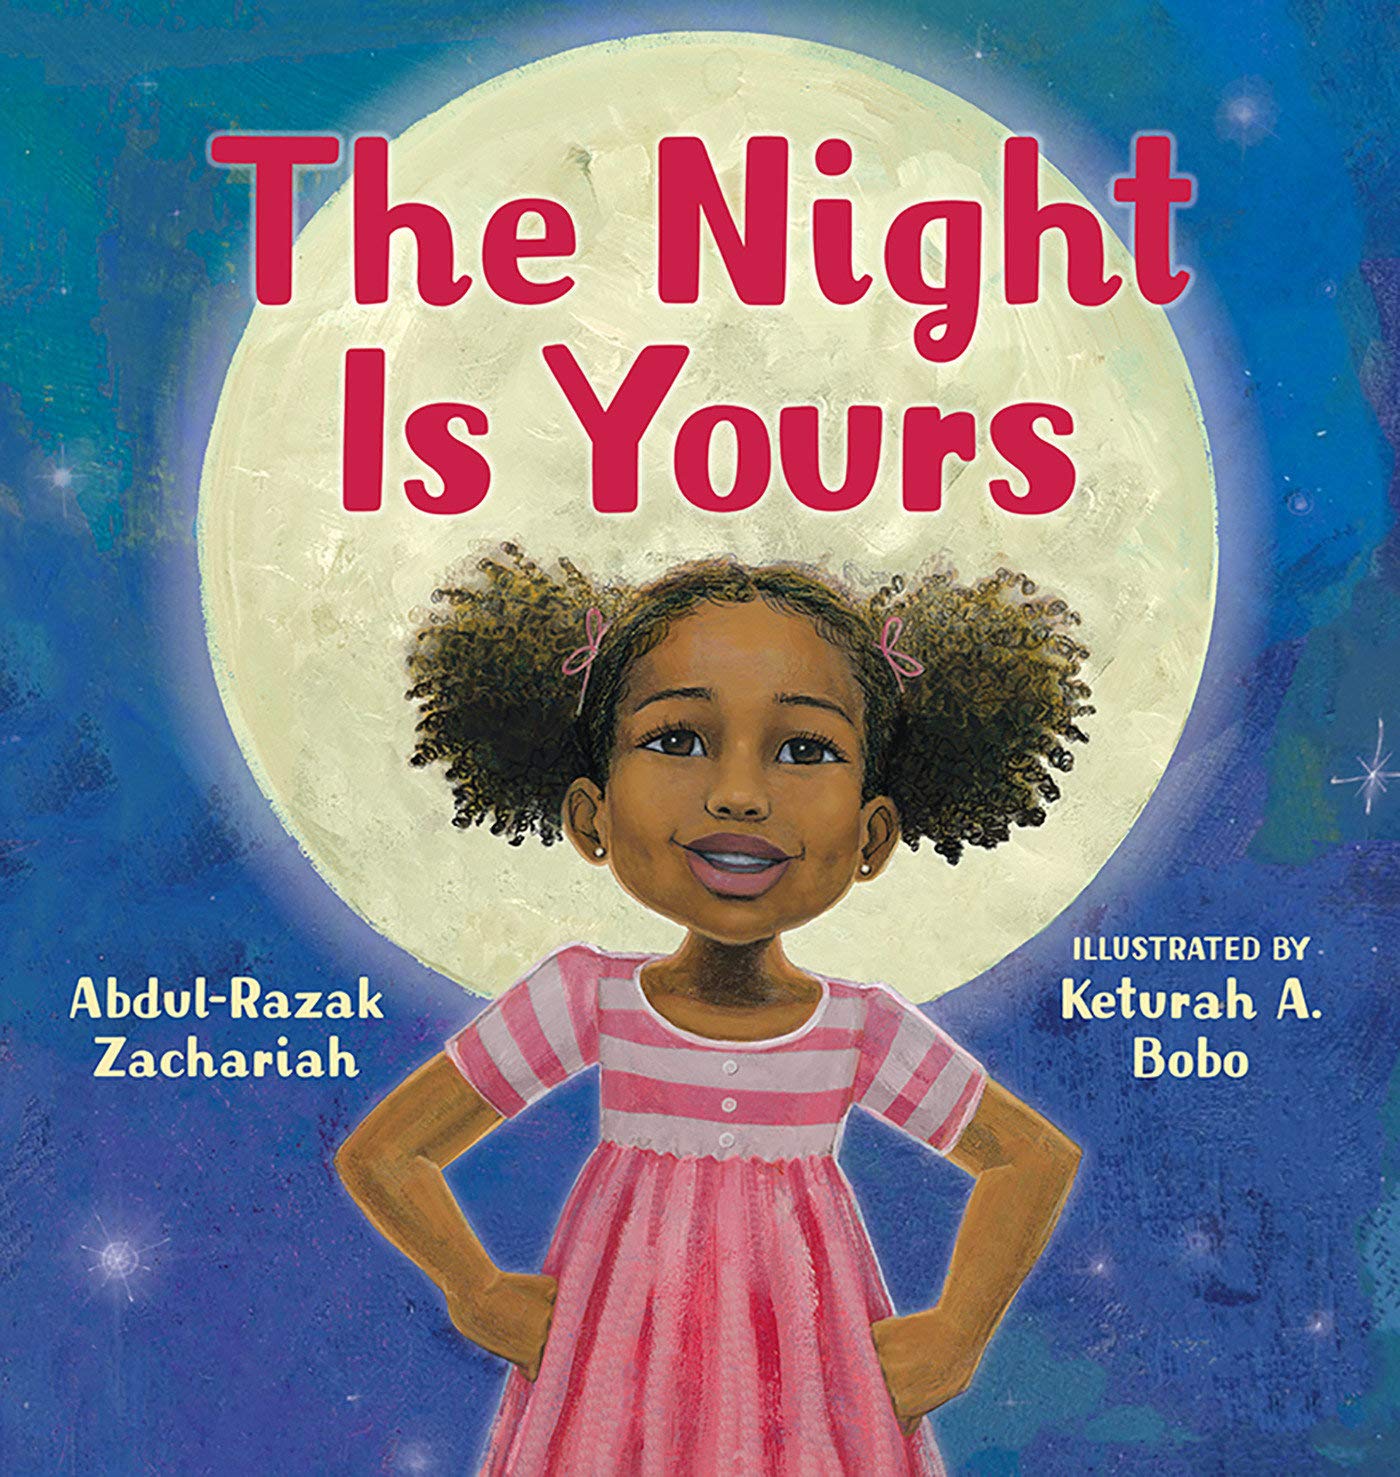 Abdul-Razak Zavhariah's "The Night Is Yours" book cover